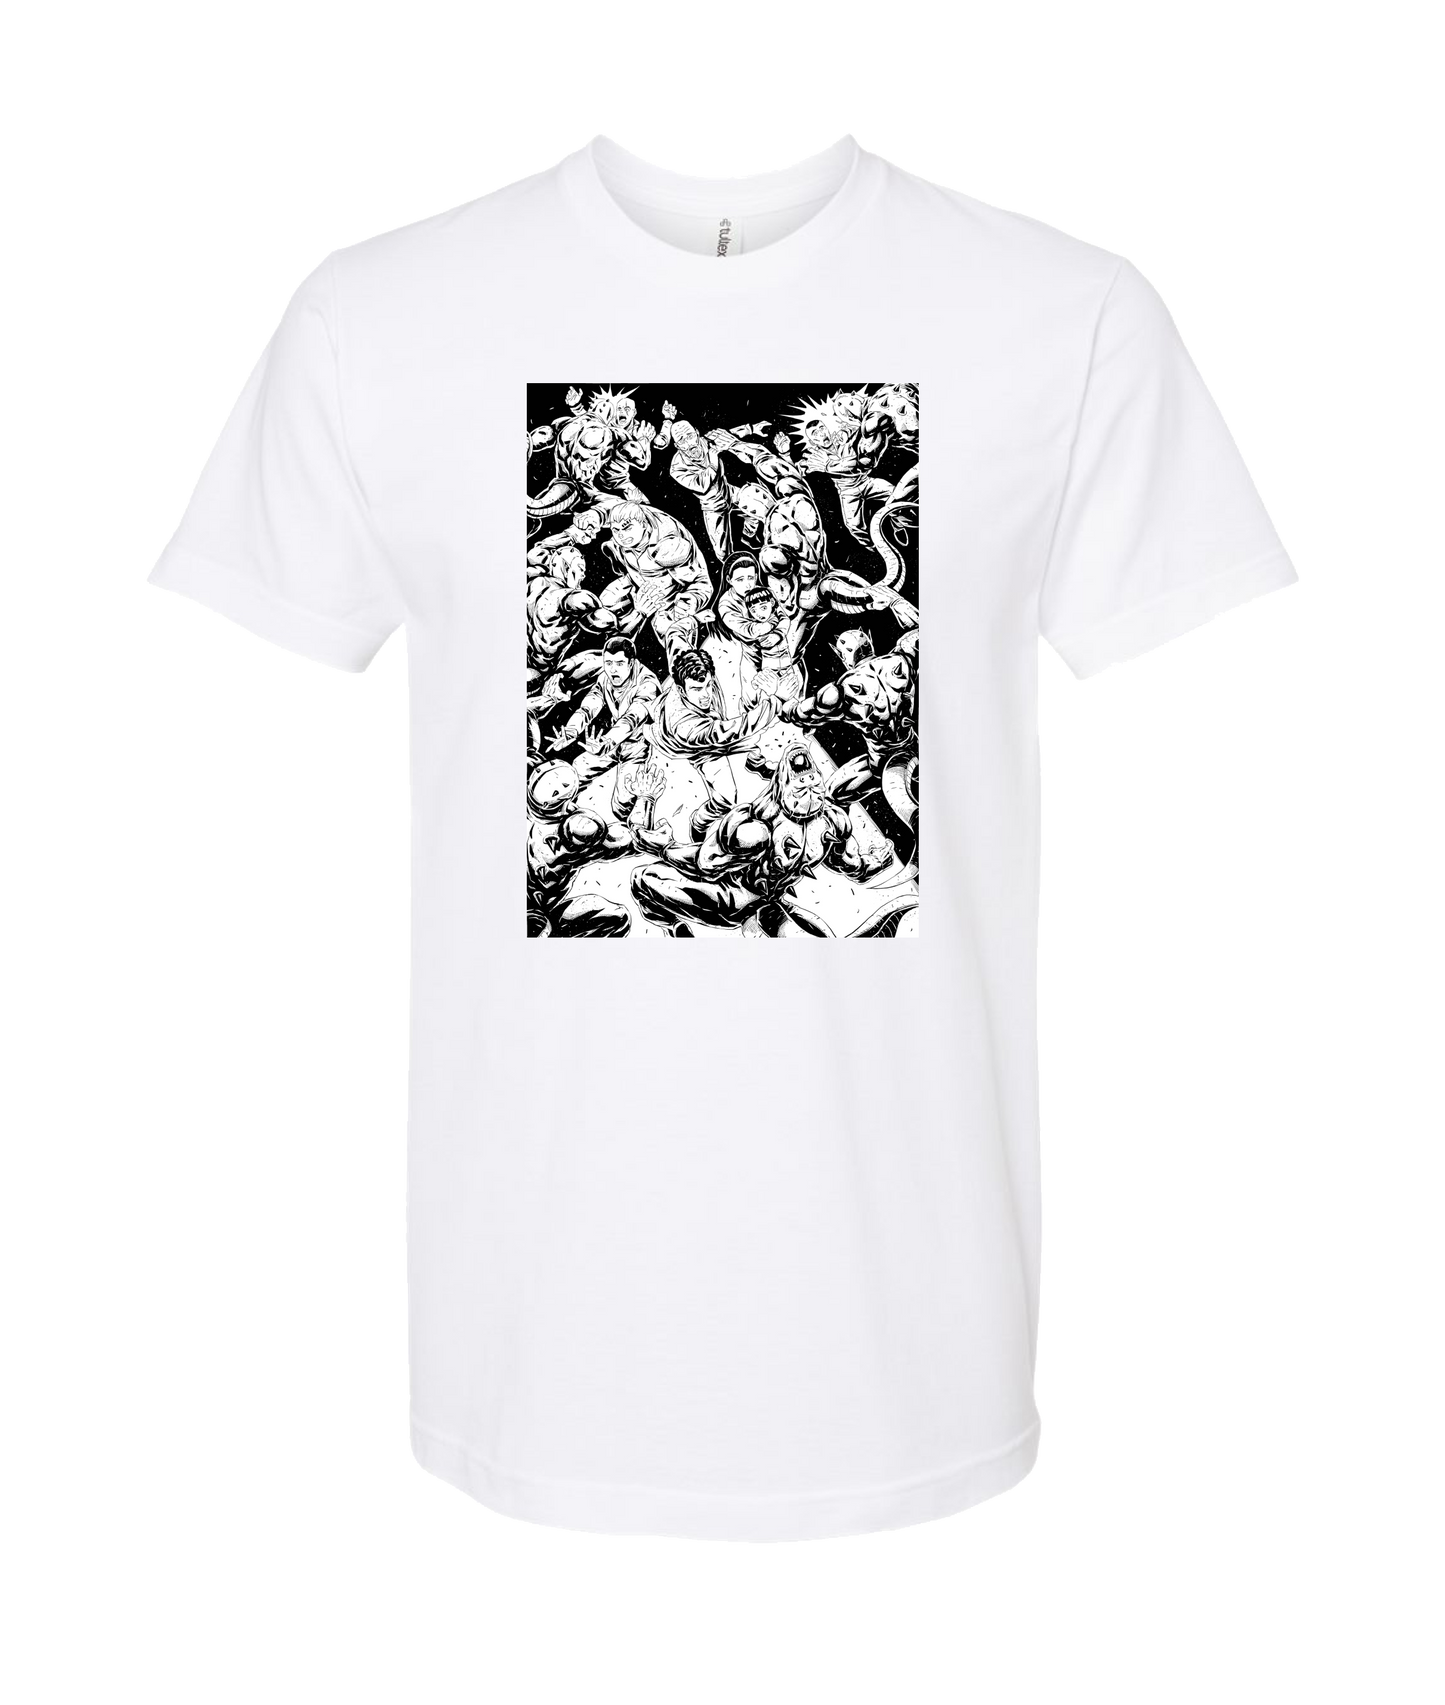 Cherrycorp - THE BIG FIGHT - White T Shirt